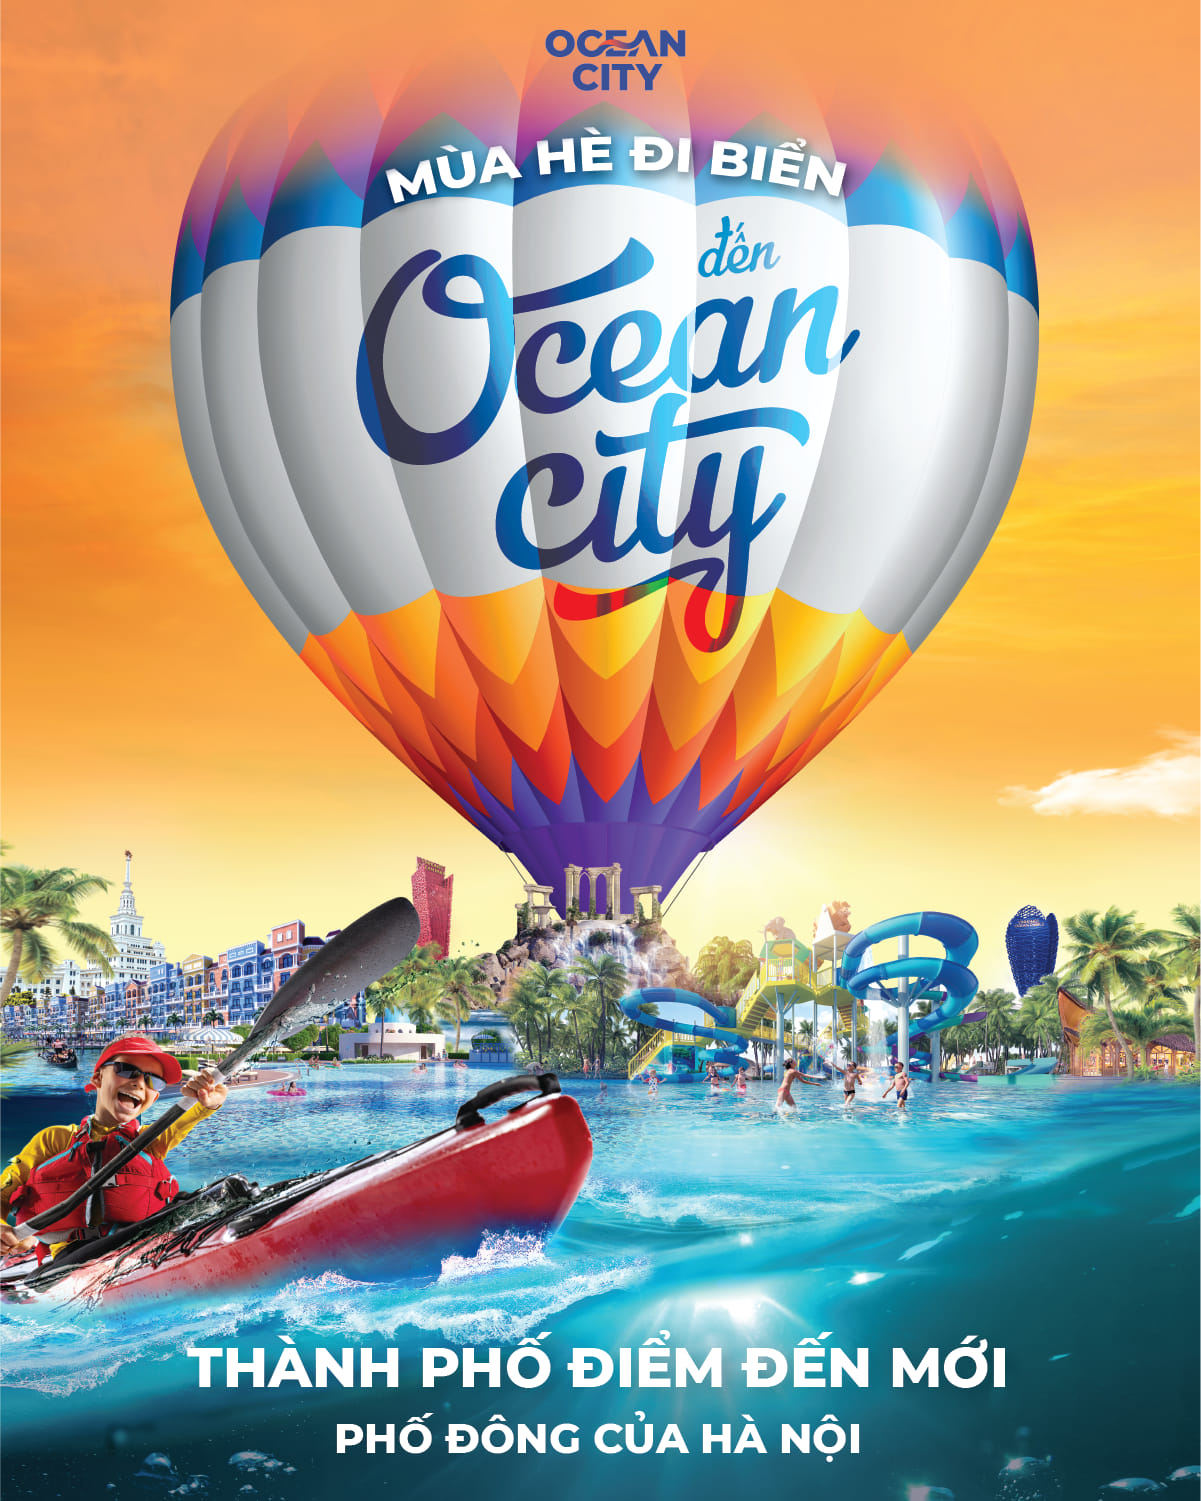 Mùa hè đi biển đến Ocean City - Thành phố điểm đến mới phố đông Hà Nội